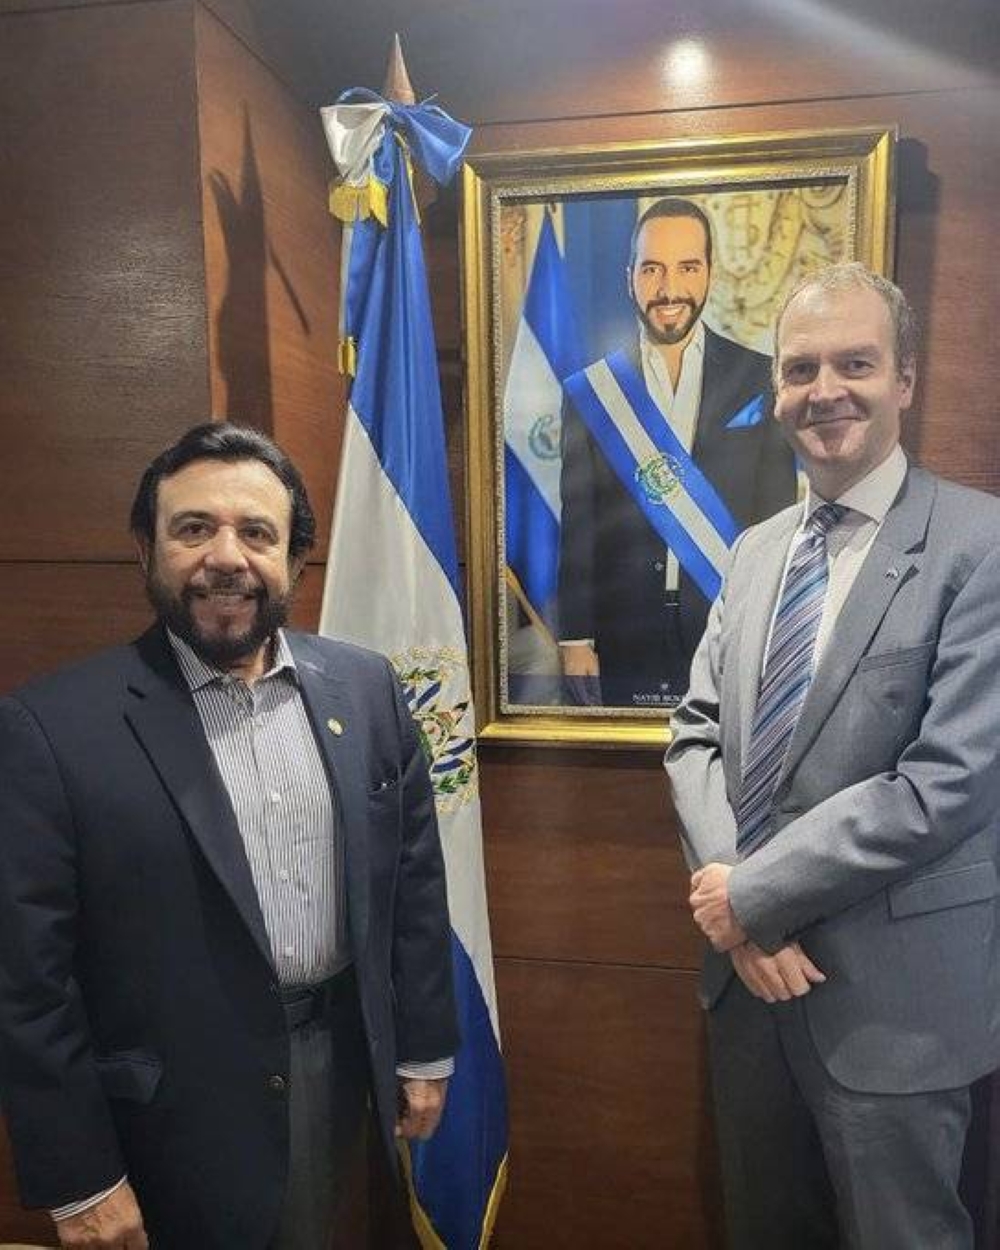 El embajador británico en El Salvador, David Lelliott, informó del viaje del vicepresidente Félix Ulloa hacia el Reino Unido. / @DavidLelliottUK.